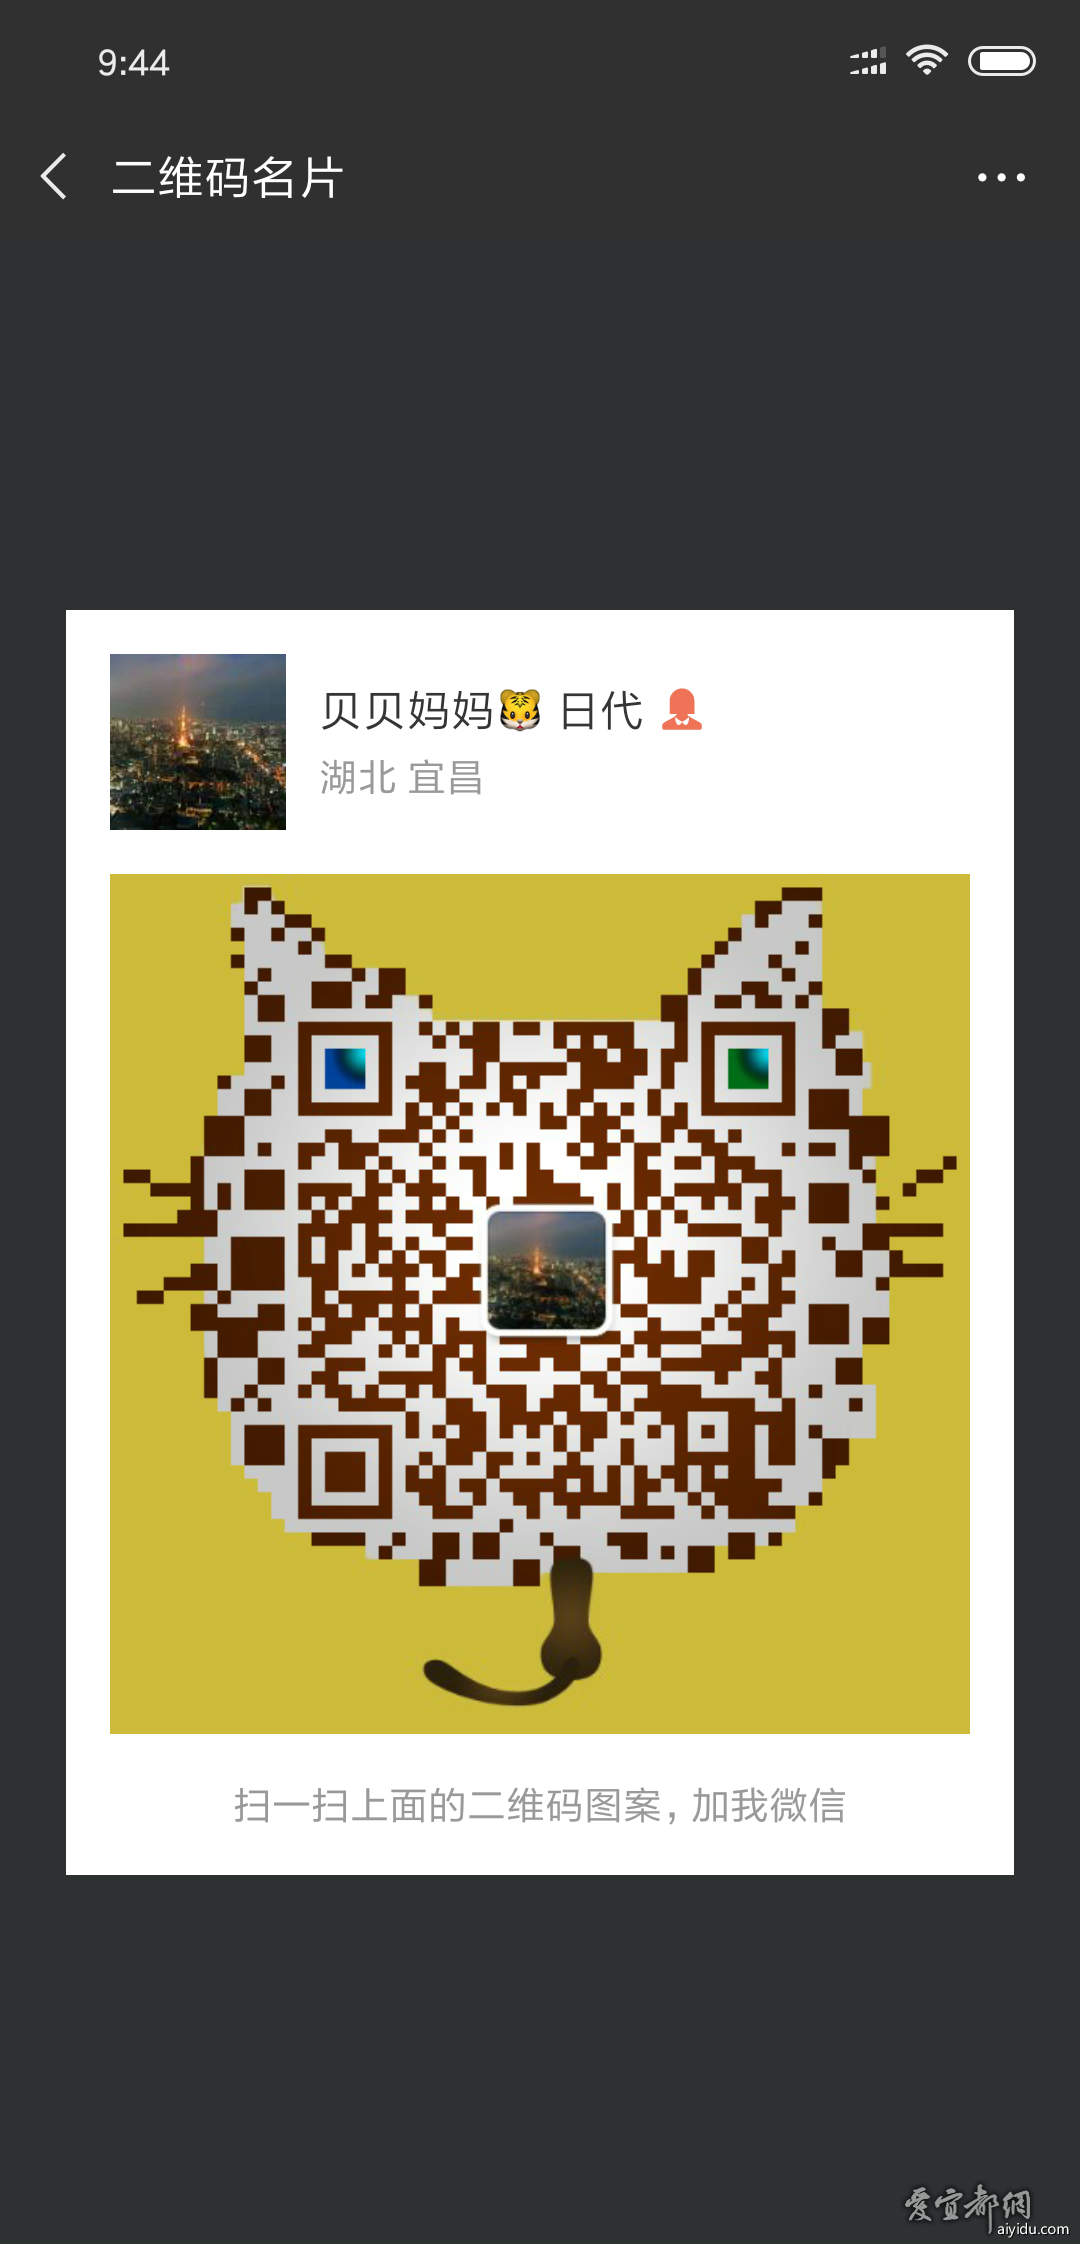 Screenshot_2018-08-31-09-44-27-970_com.tencent.mm.png